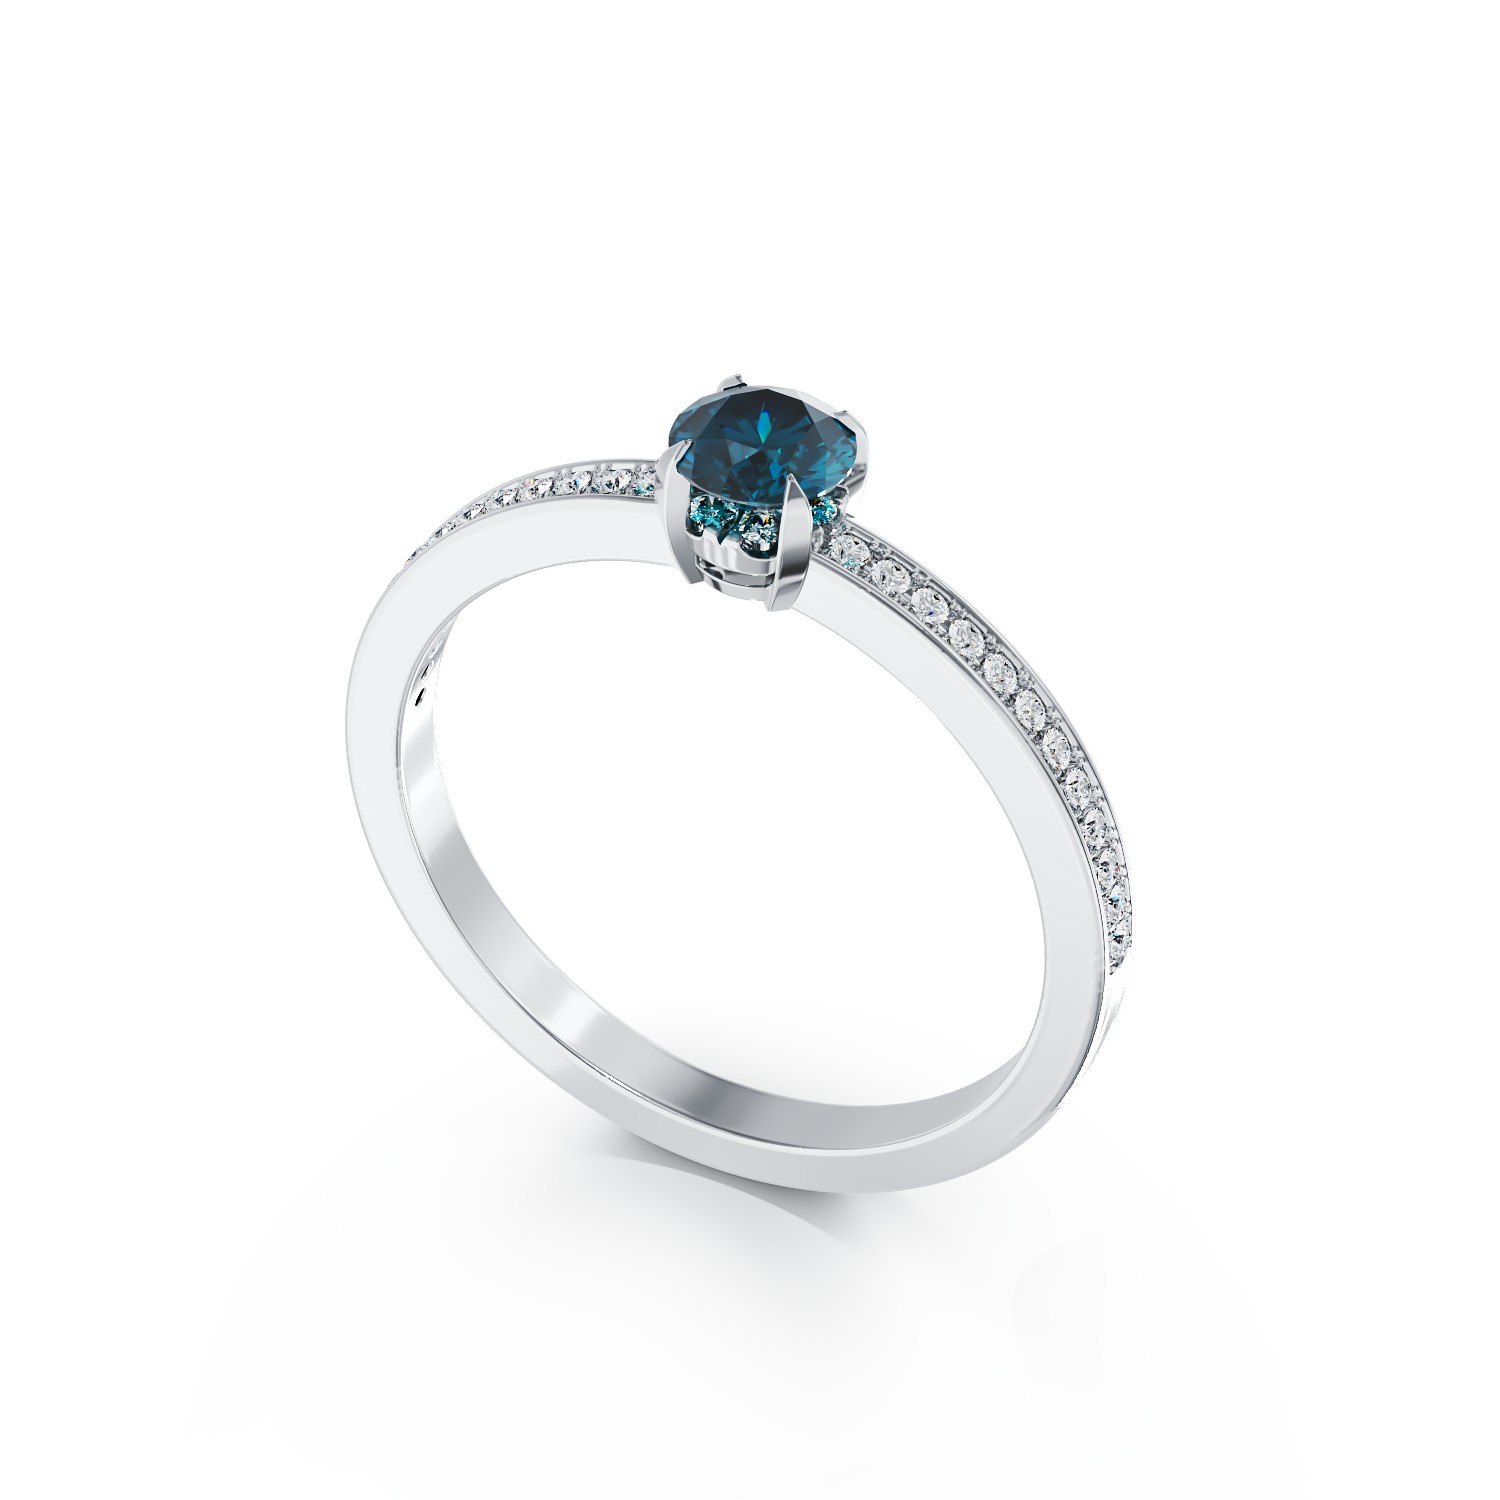 Inel de logodna din aur alb de 18K cu diamant albastru de 0.32ct si diamante transparente de 0.19ct